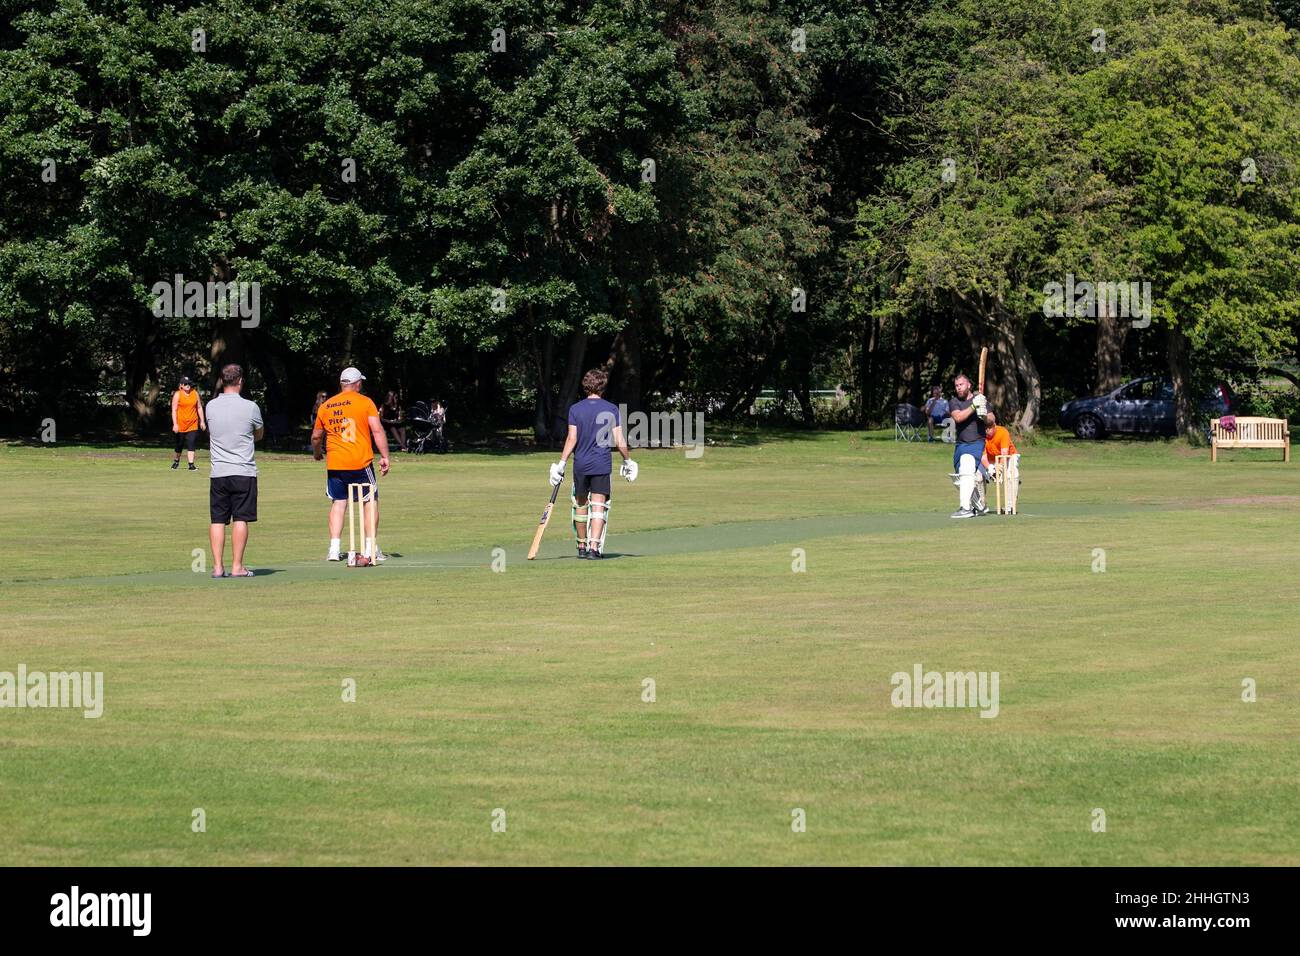 Eine Sommerszene am Wochenende, in der Amateur-Cricketspieler ein Knockout-Spiel auf einem von Bäumen gesäumten Boden genießen Stockfoto